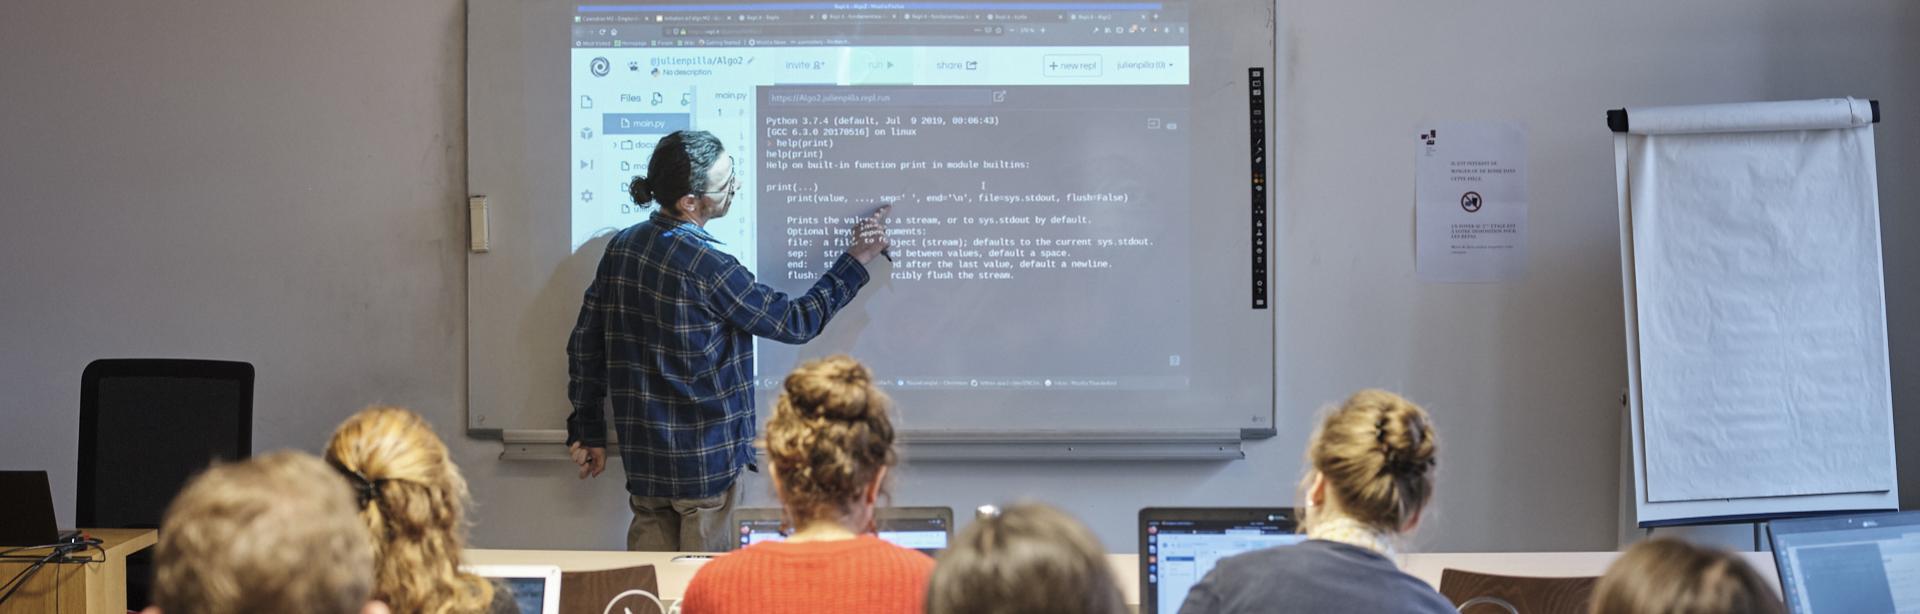 Vue de la salle informatique lors d'un cours de programmation